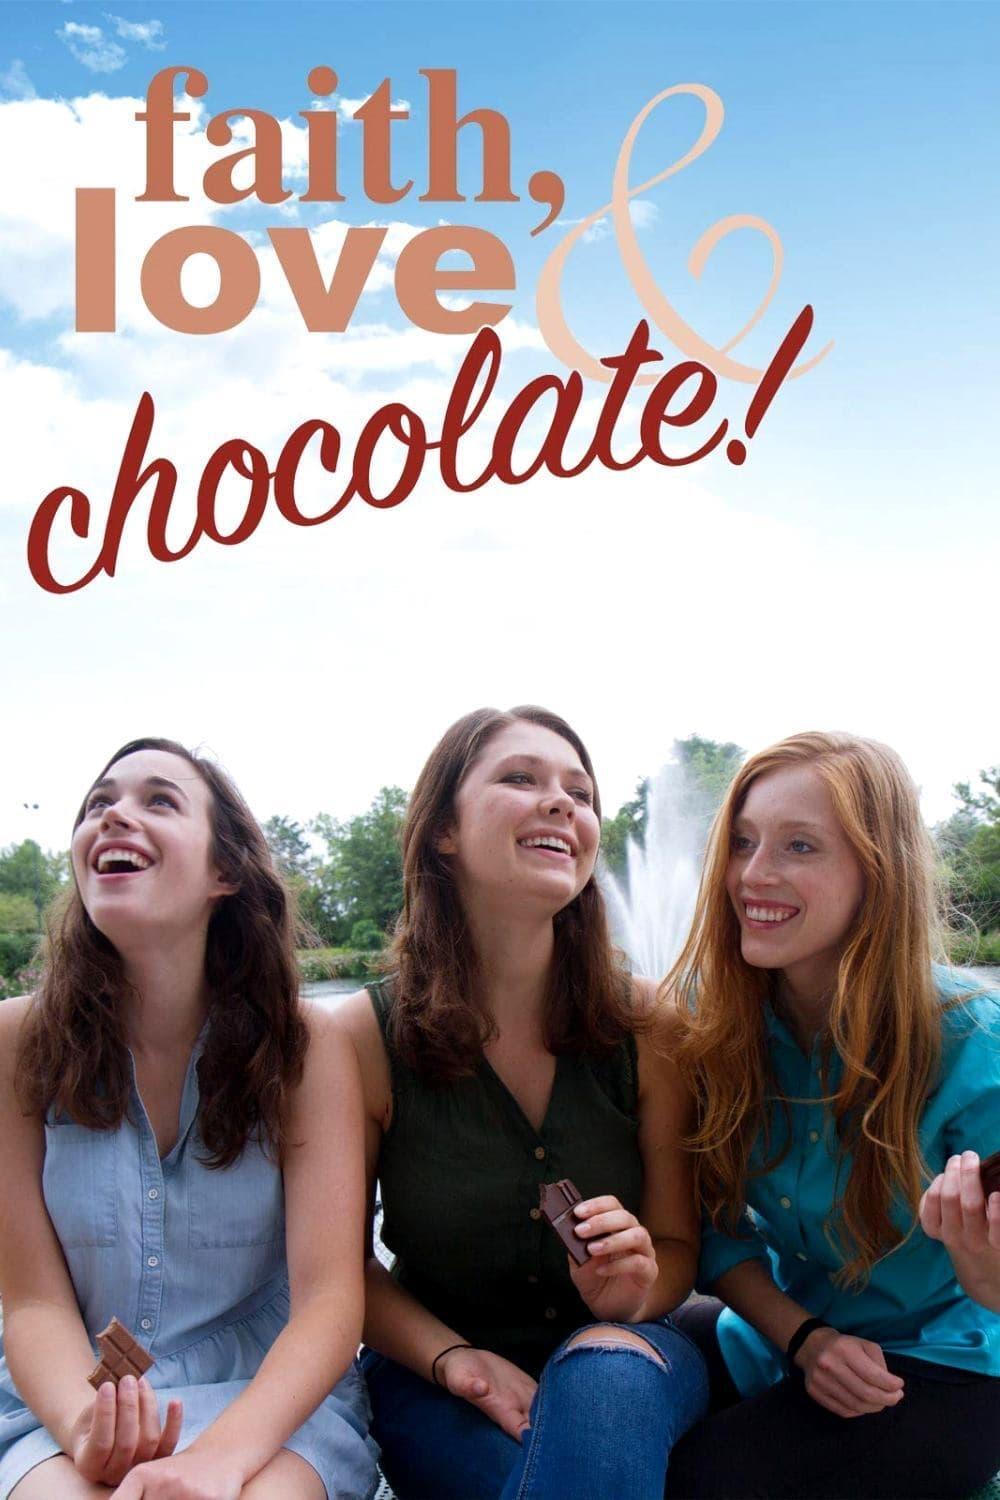 Faith, Love & Chocolate poster